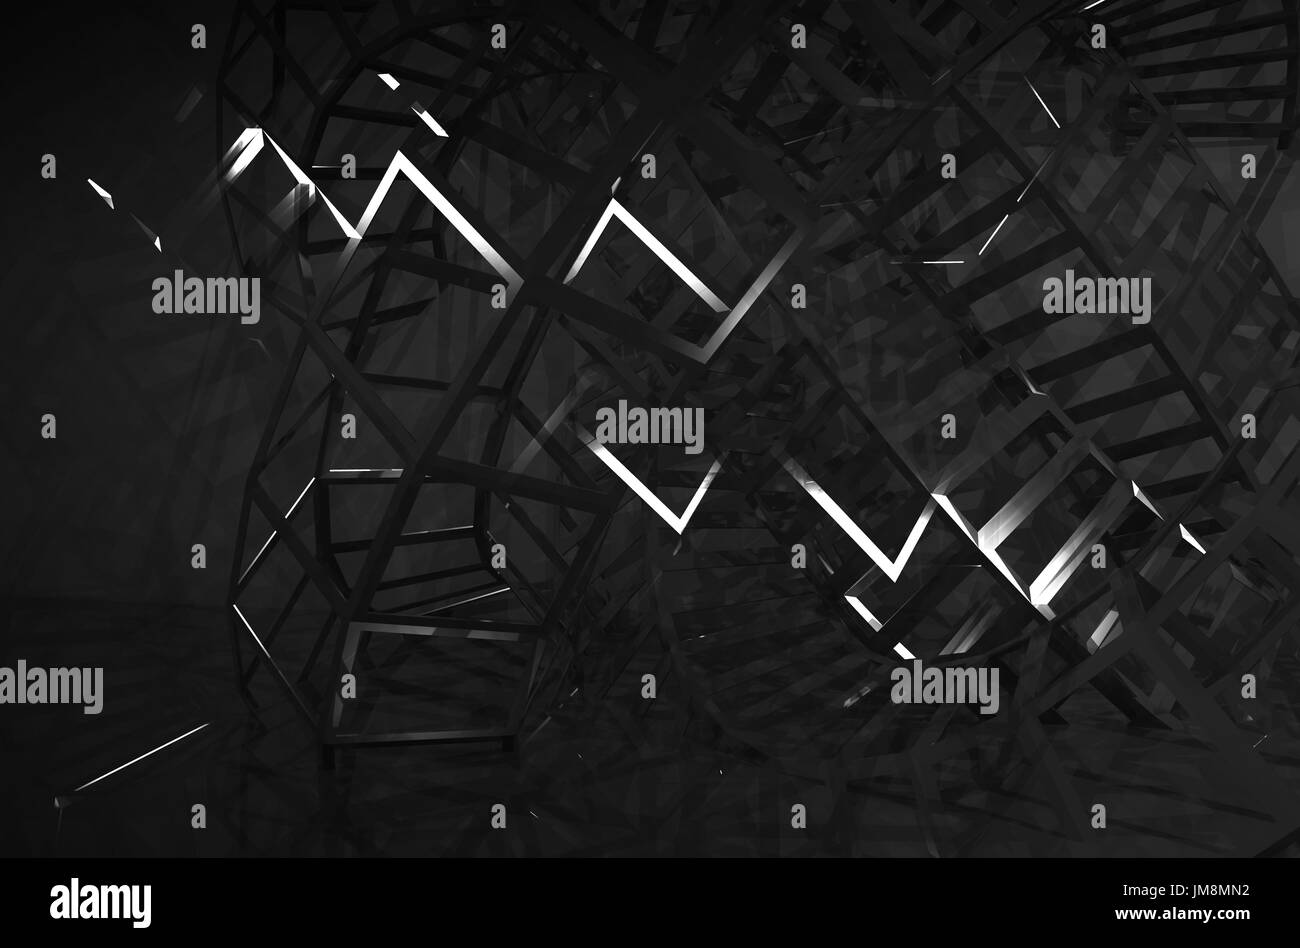 Abstrakt schwarz digitale grafischen Hintergrund, schneidenden physischen Drahtrahmen Strukturen in Dunkelheit. 3D Render-illustration Stockfoto